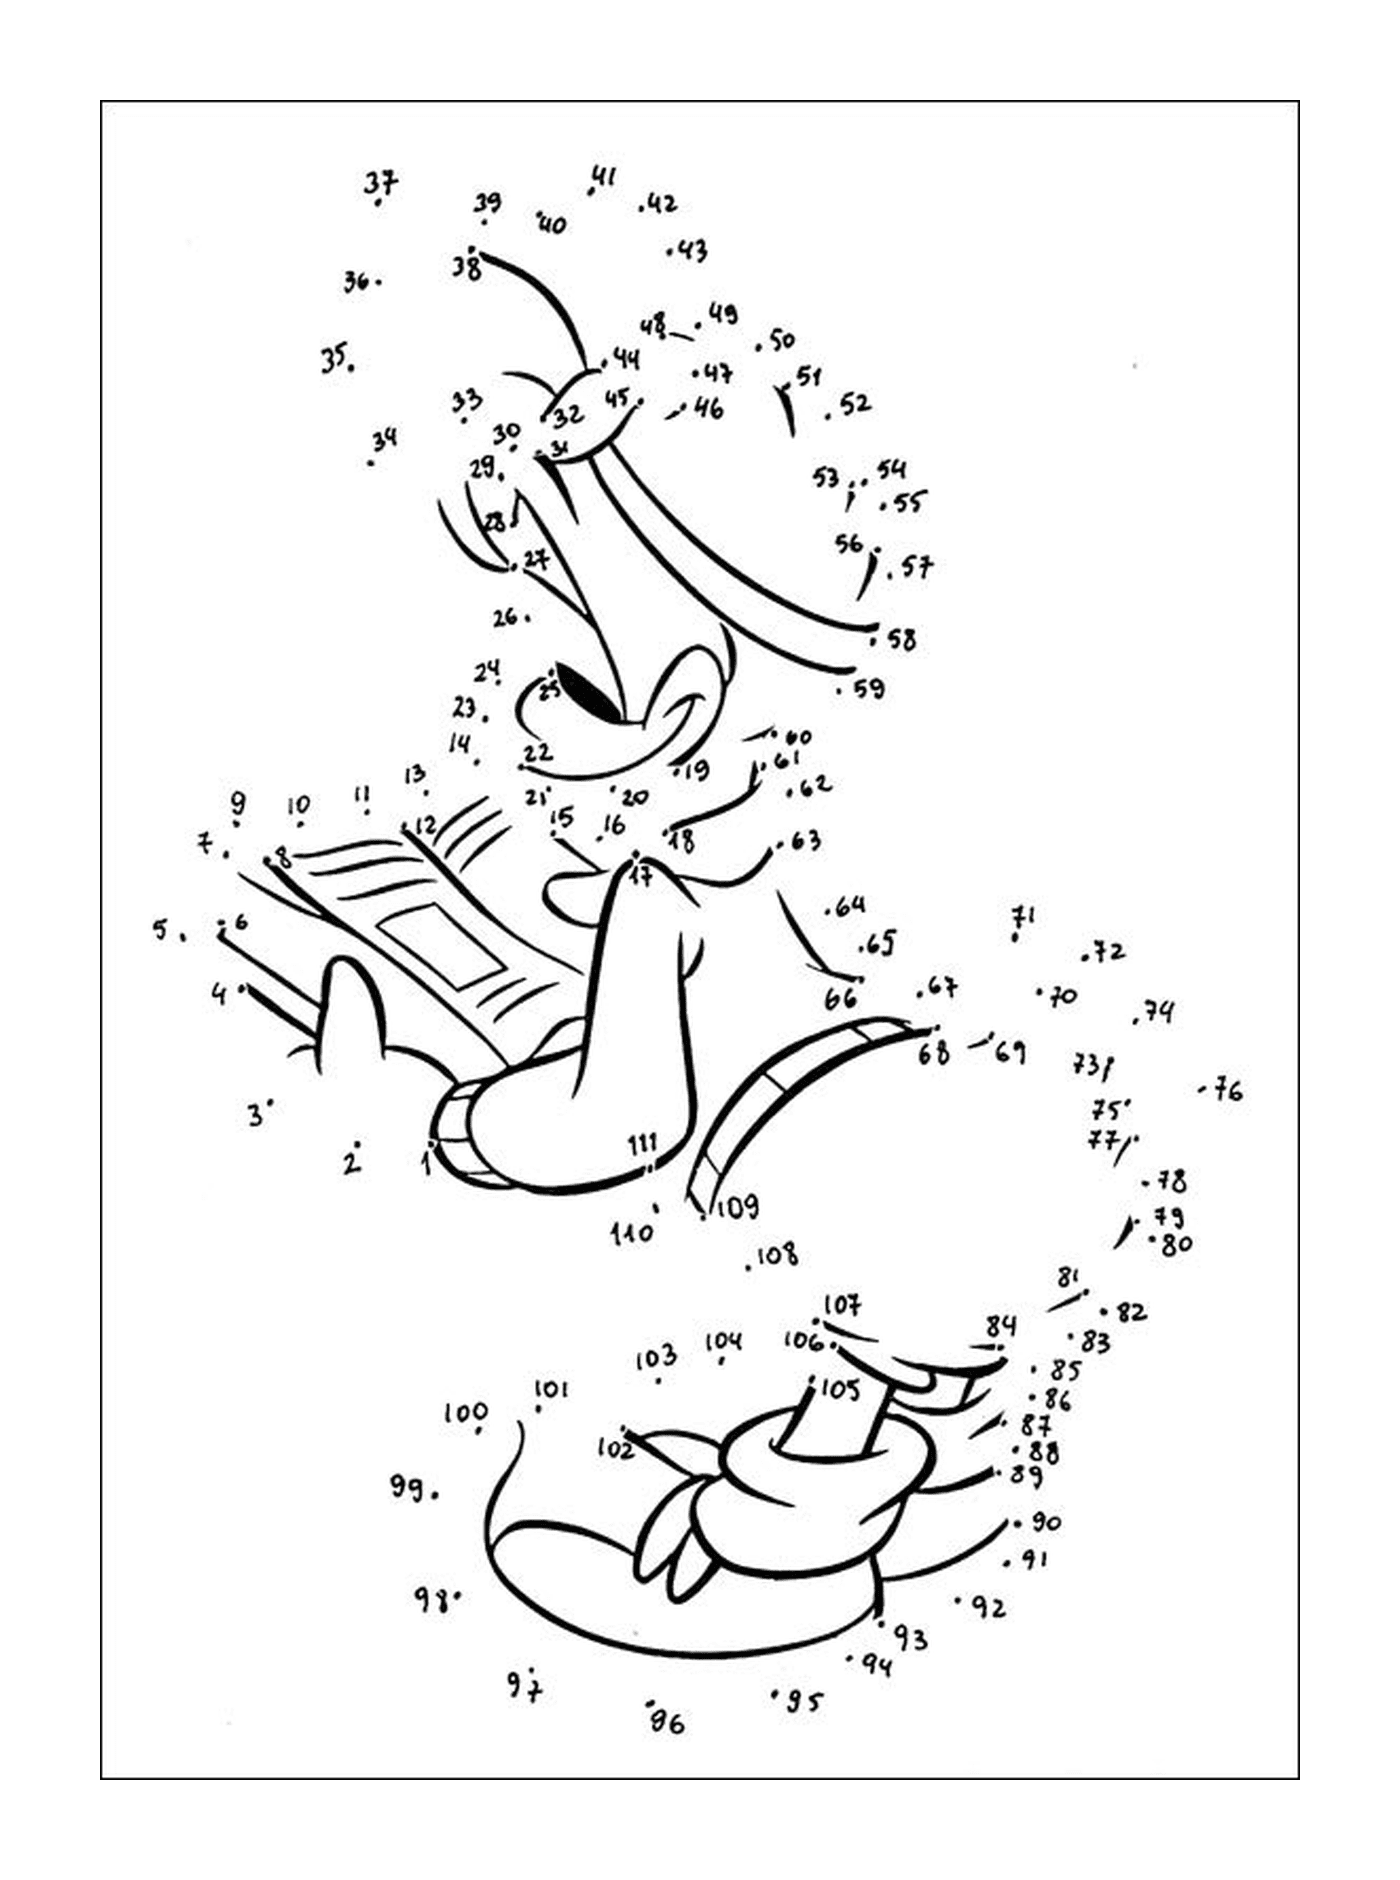  Bugs Bunny e Daffy Duck in punti per collegare 